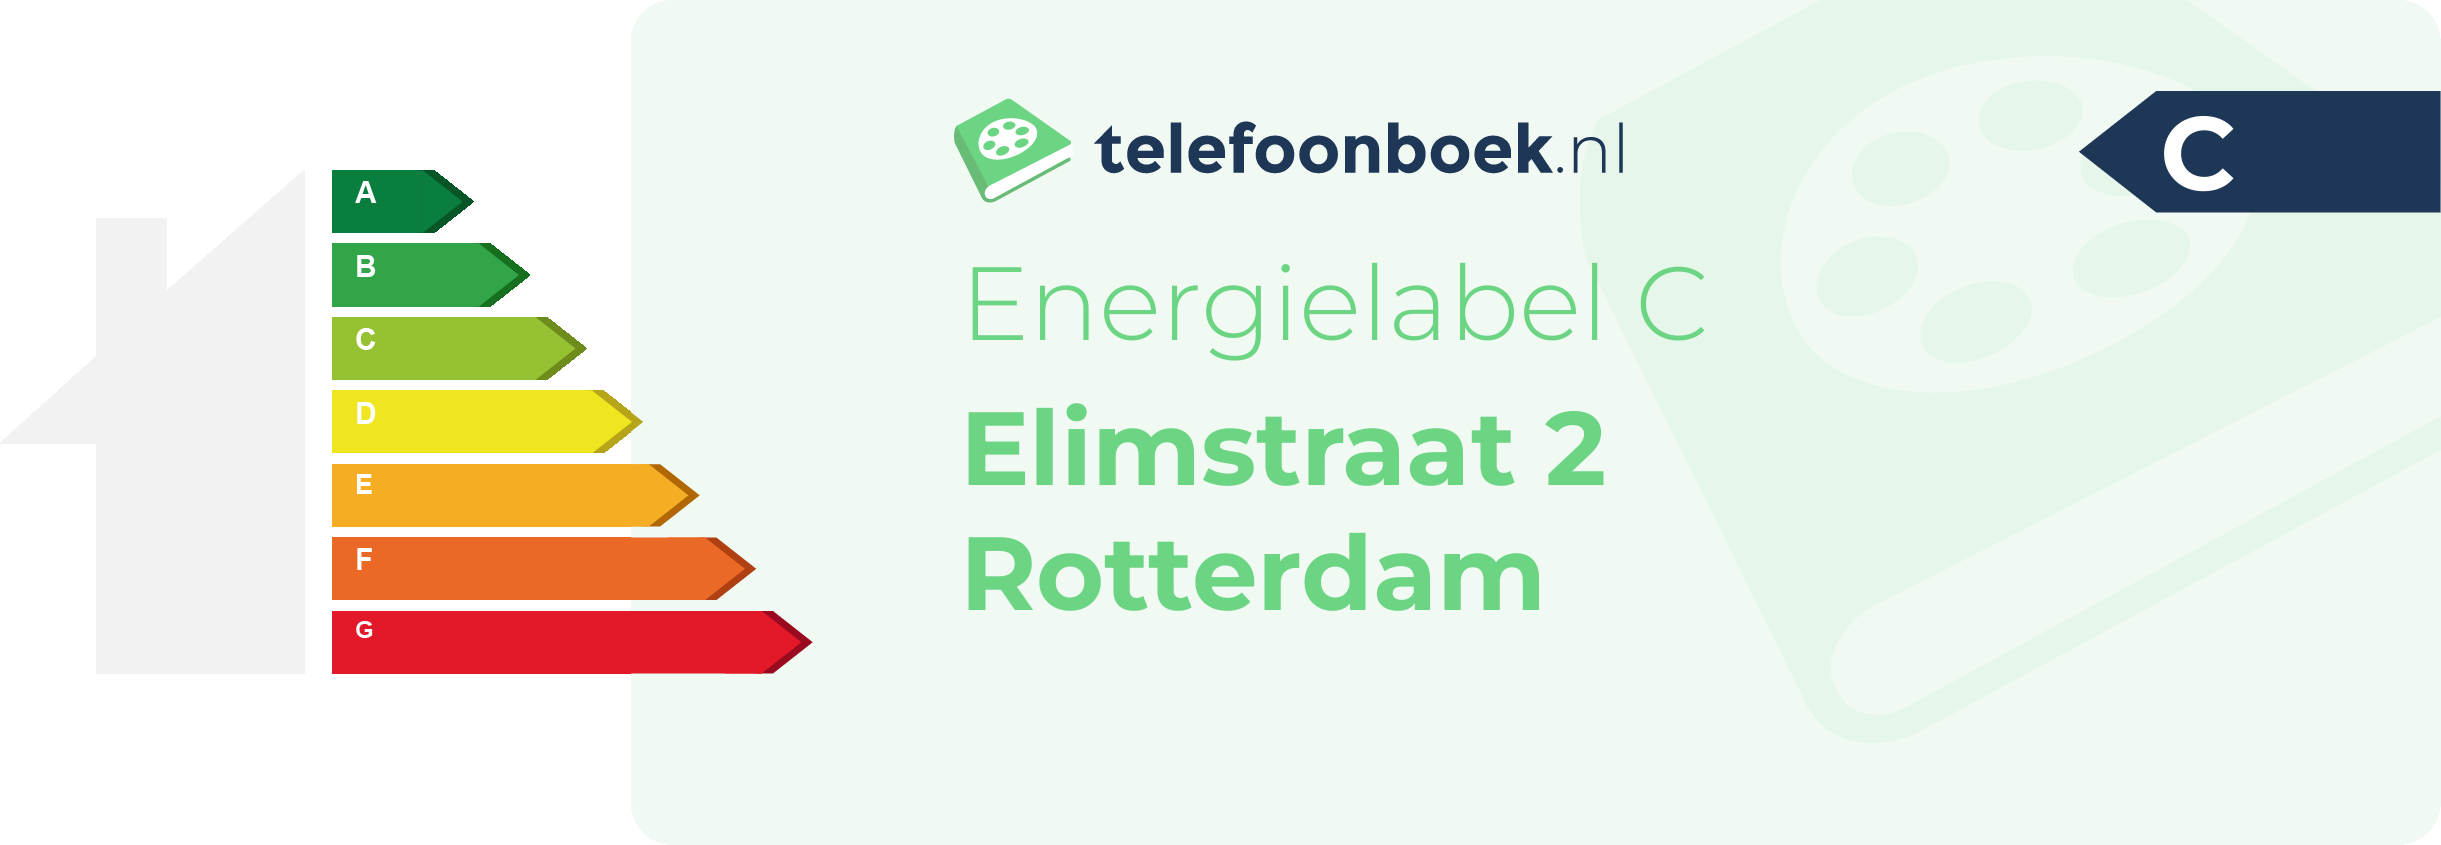 Energielabel Elimstraat 2 Rotterdam